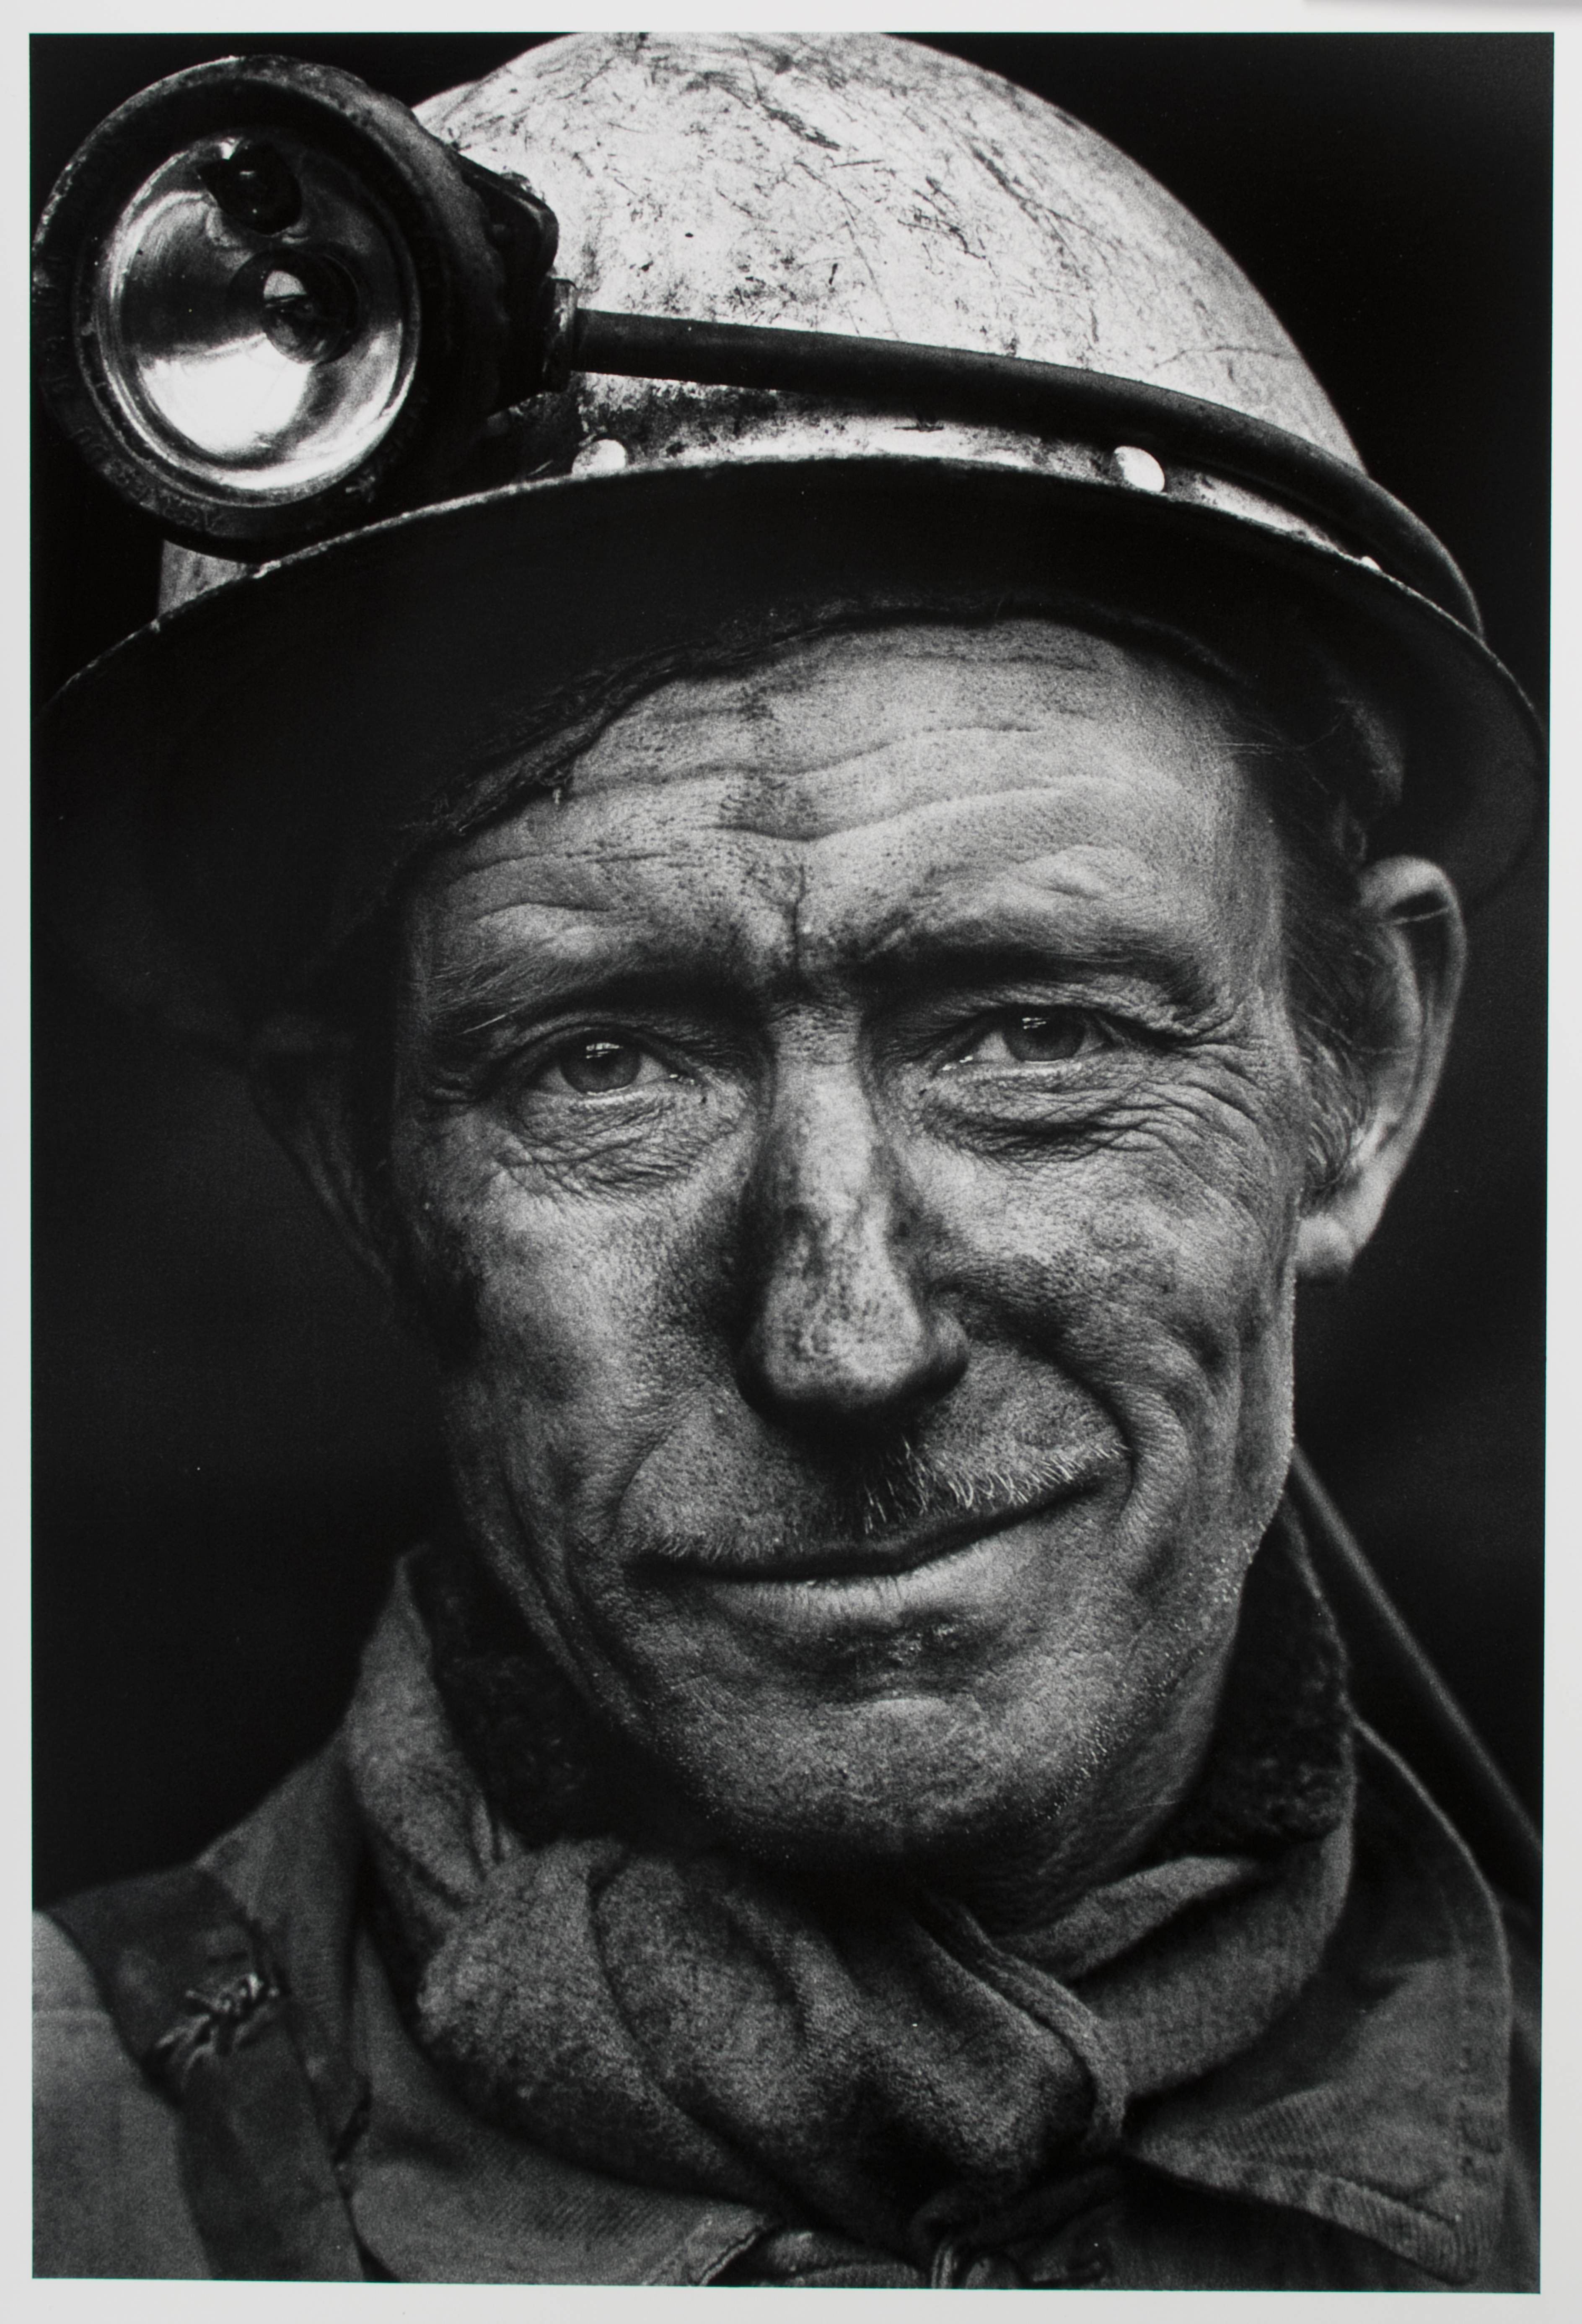 Coal Miner, Lens, France